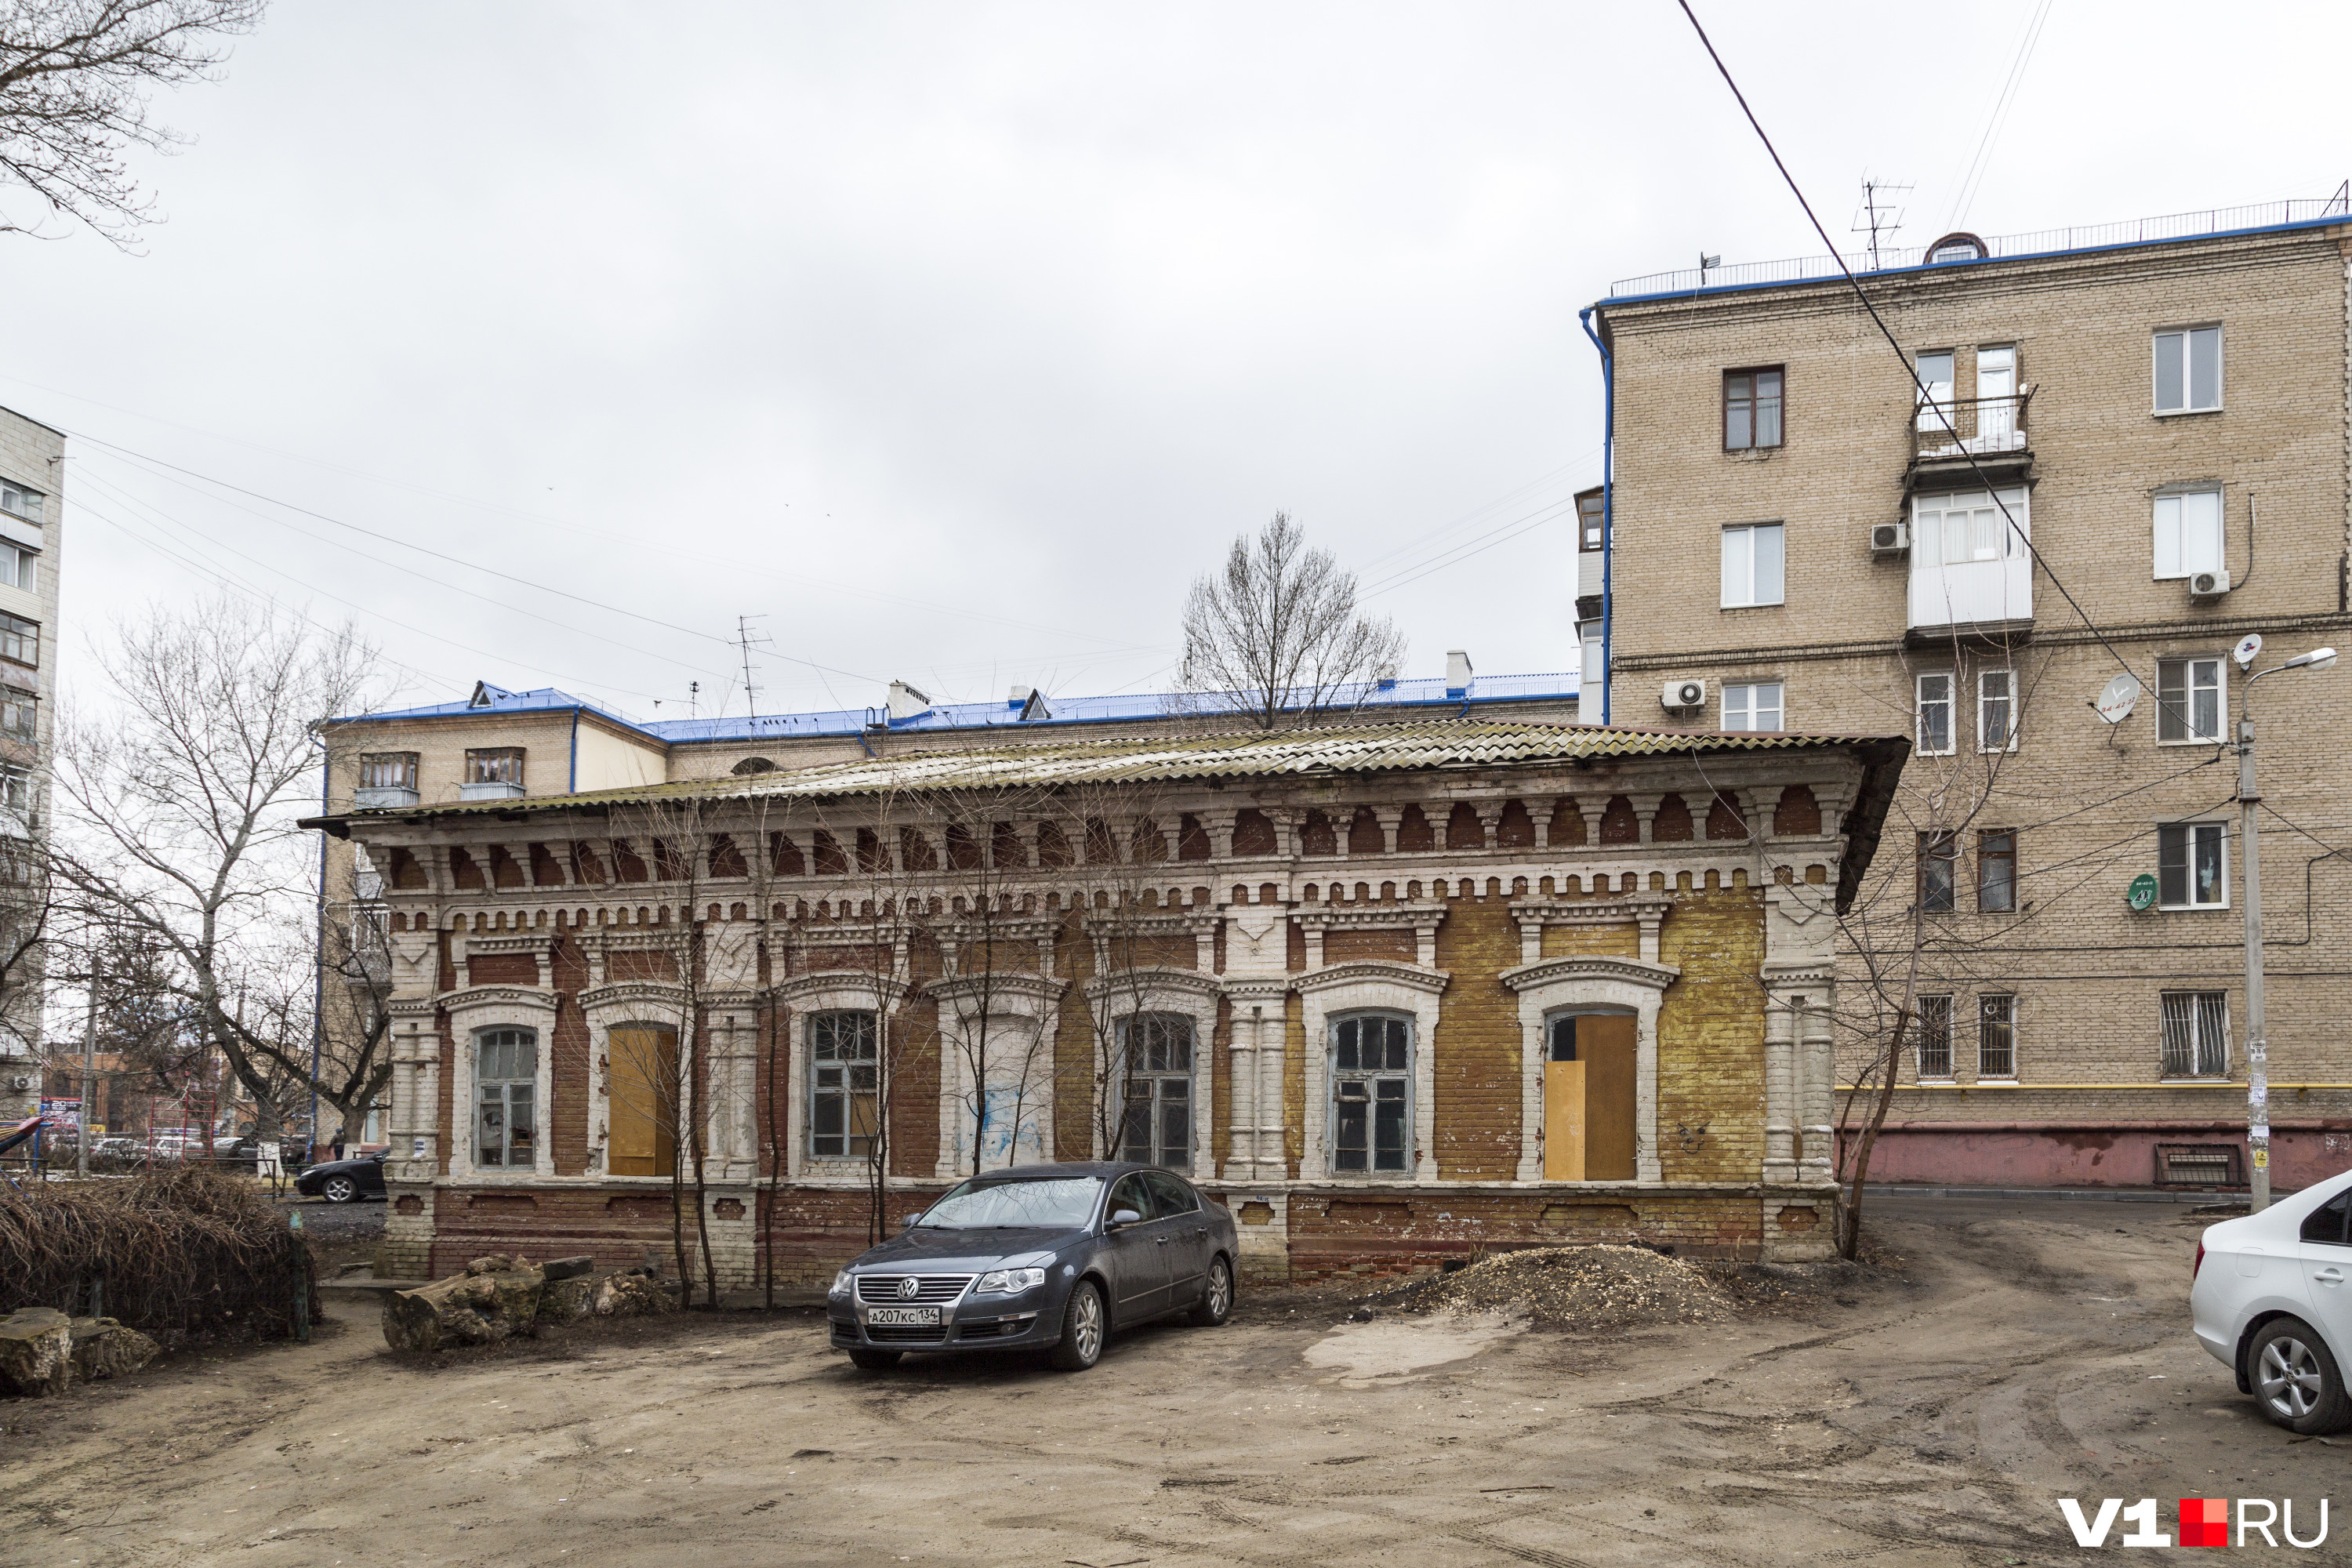 В 2018 году купеческий дом был продан за миллион рублей